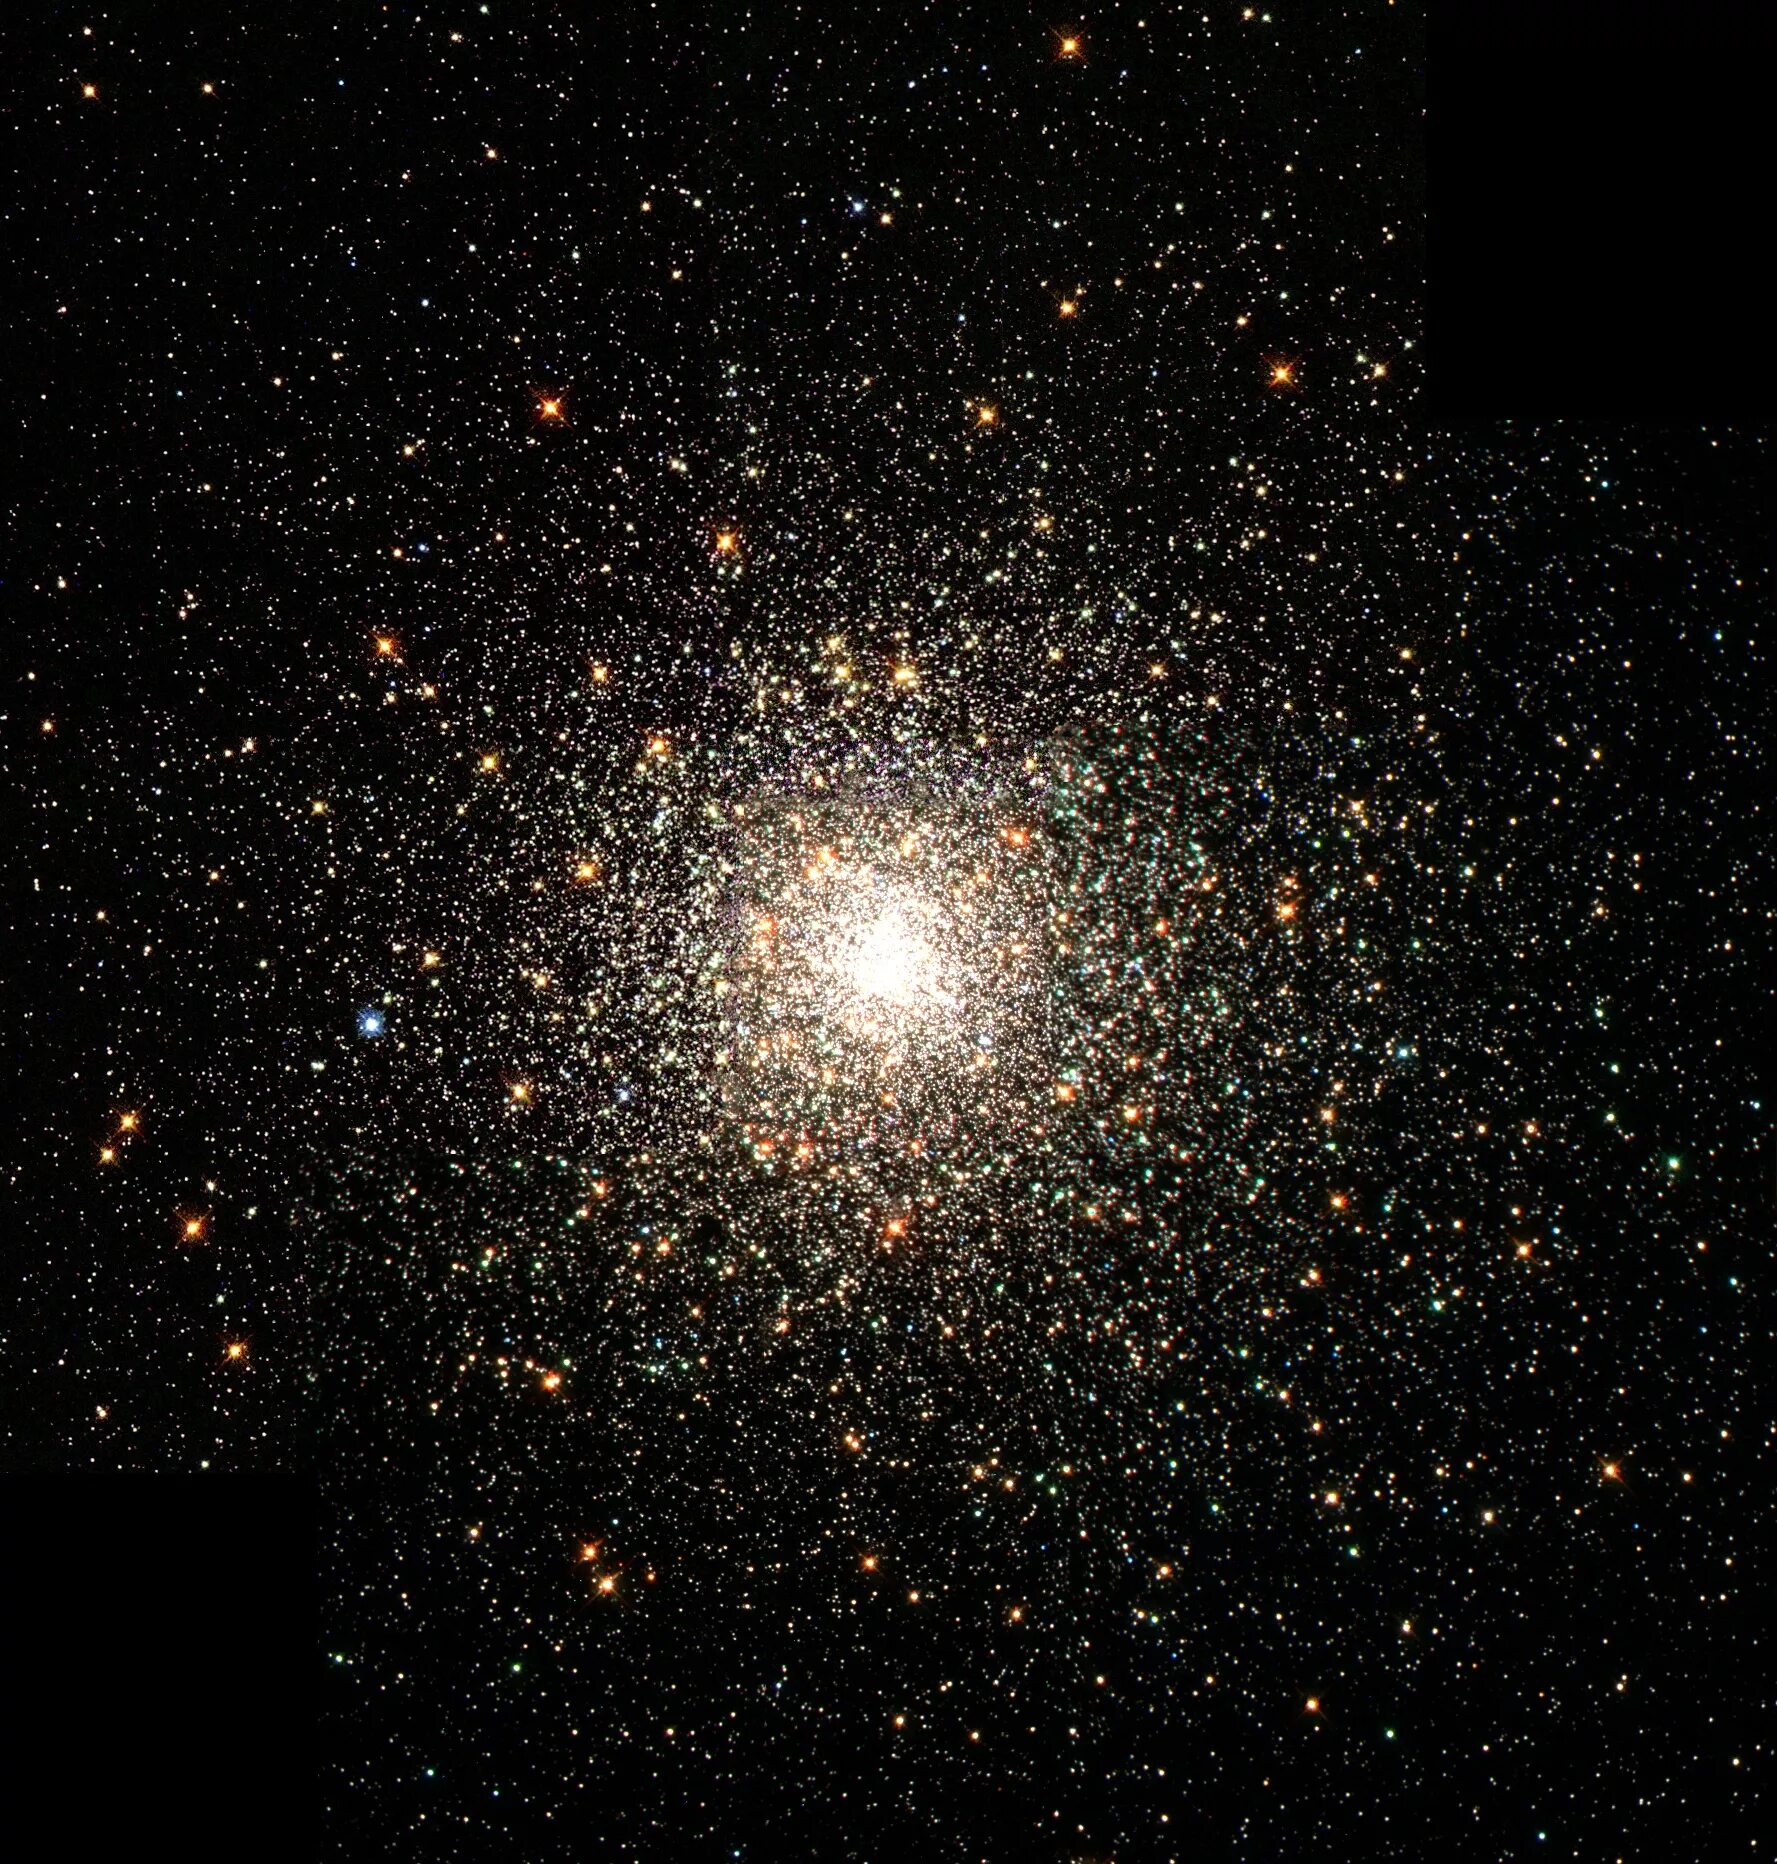 М13 Мессье. Шаровое скопление м30. Шаровое скопление Мессье 80 в созвездии скорпиона. Альфа Центавра Хаббл. Солнце яркая звезда галактики